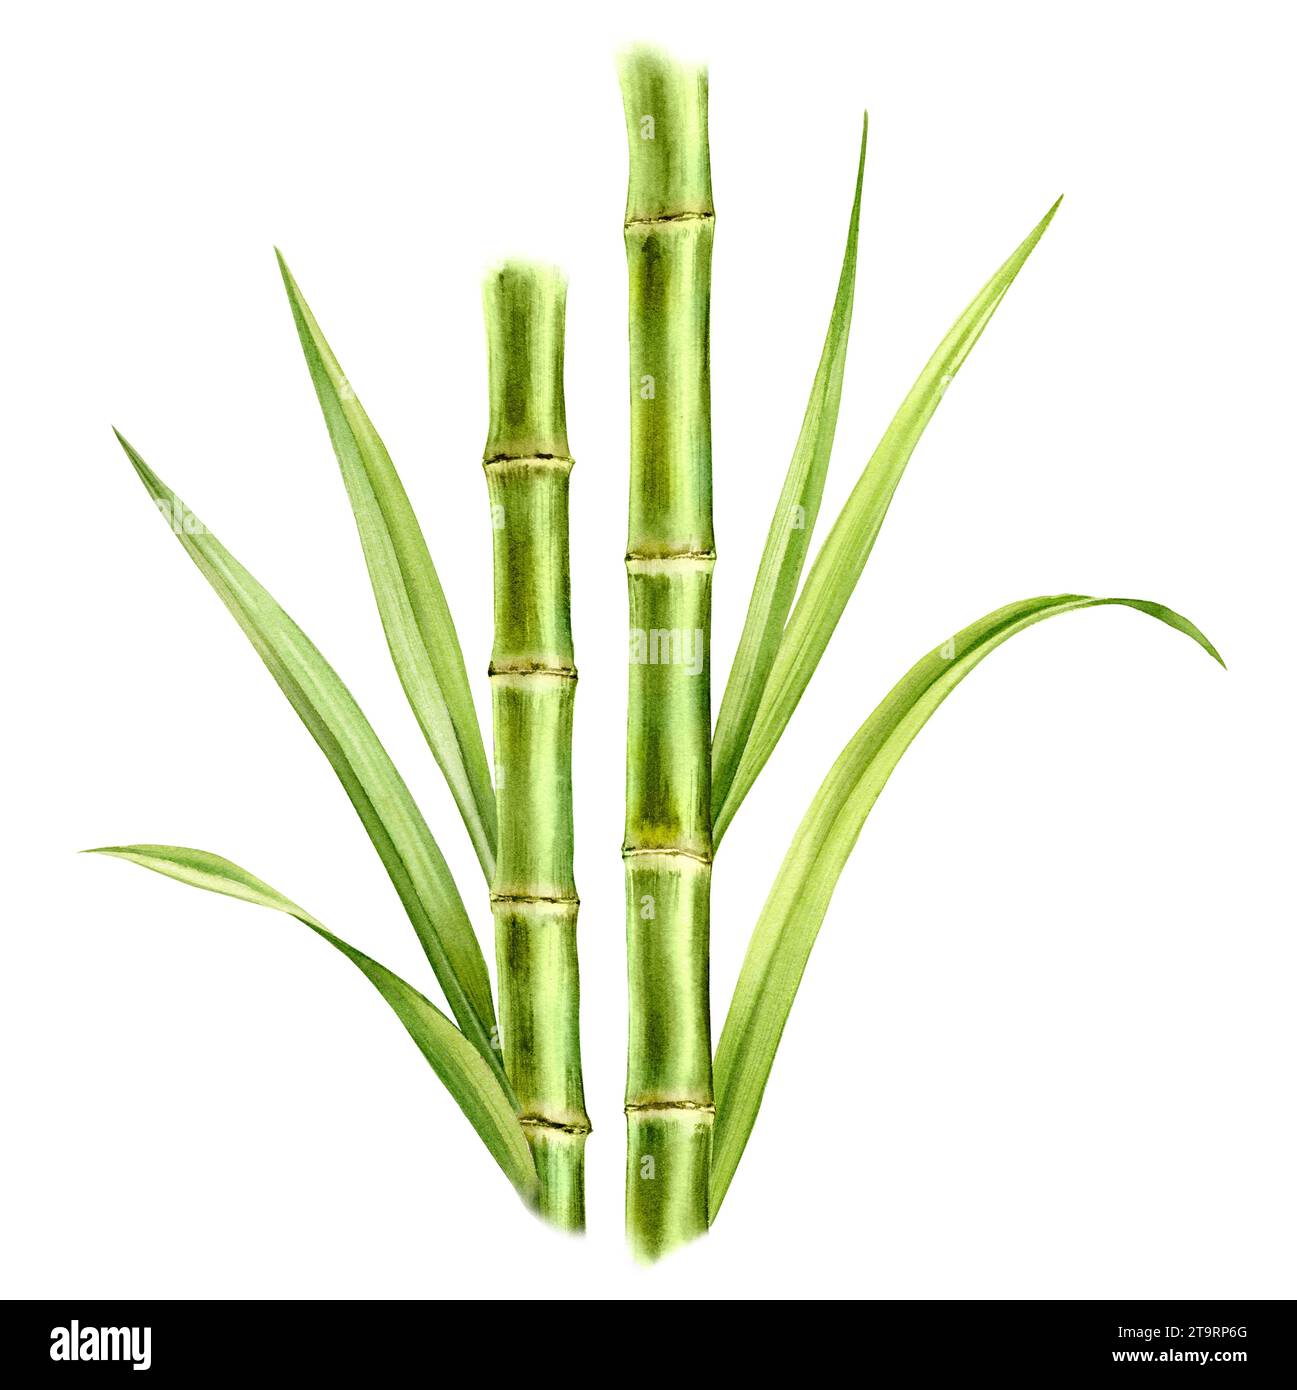 Bambusstämme und Blätter in Aquarellfarben. Komposition mit Grün. Realistische botanische Illustration mit frischer Bambuspflanze. Handgezeichnetes Poster Stockfoto